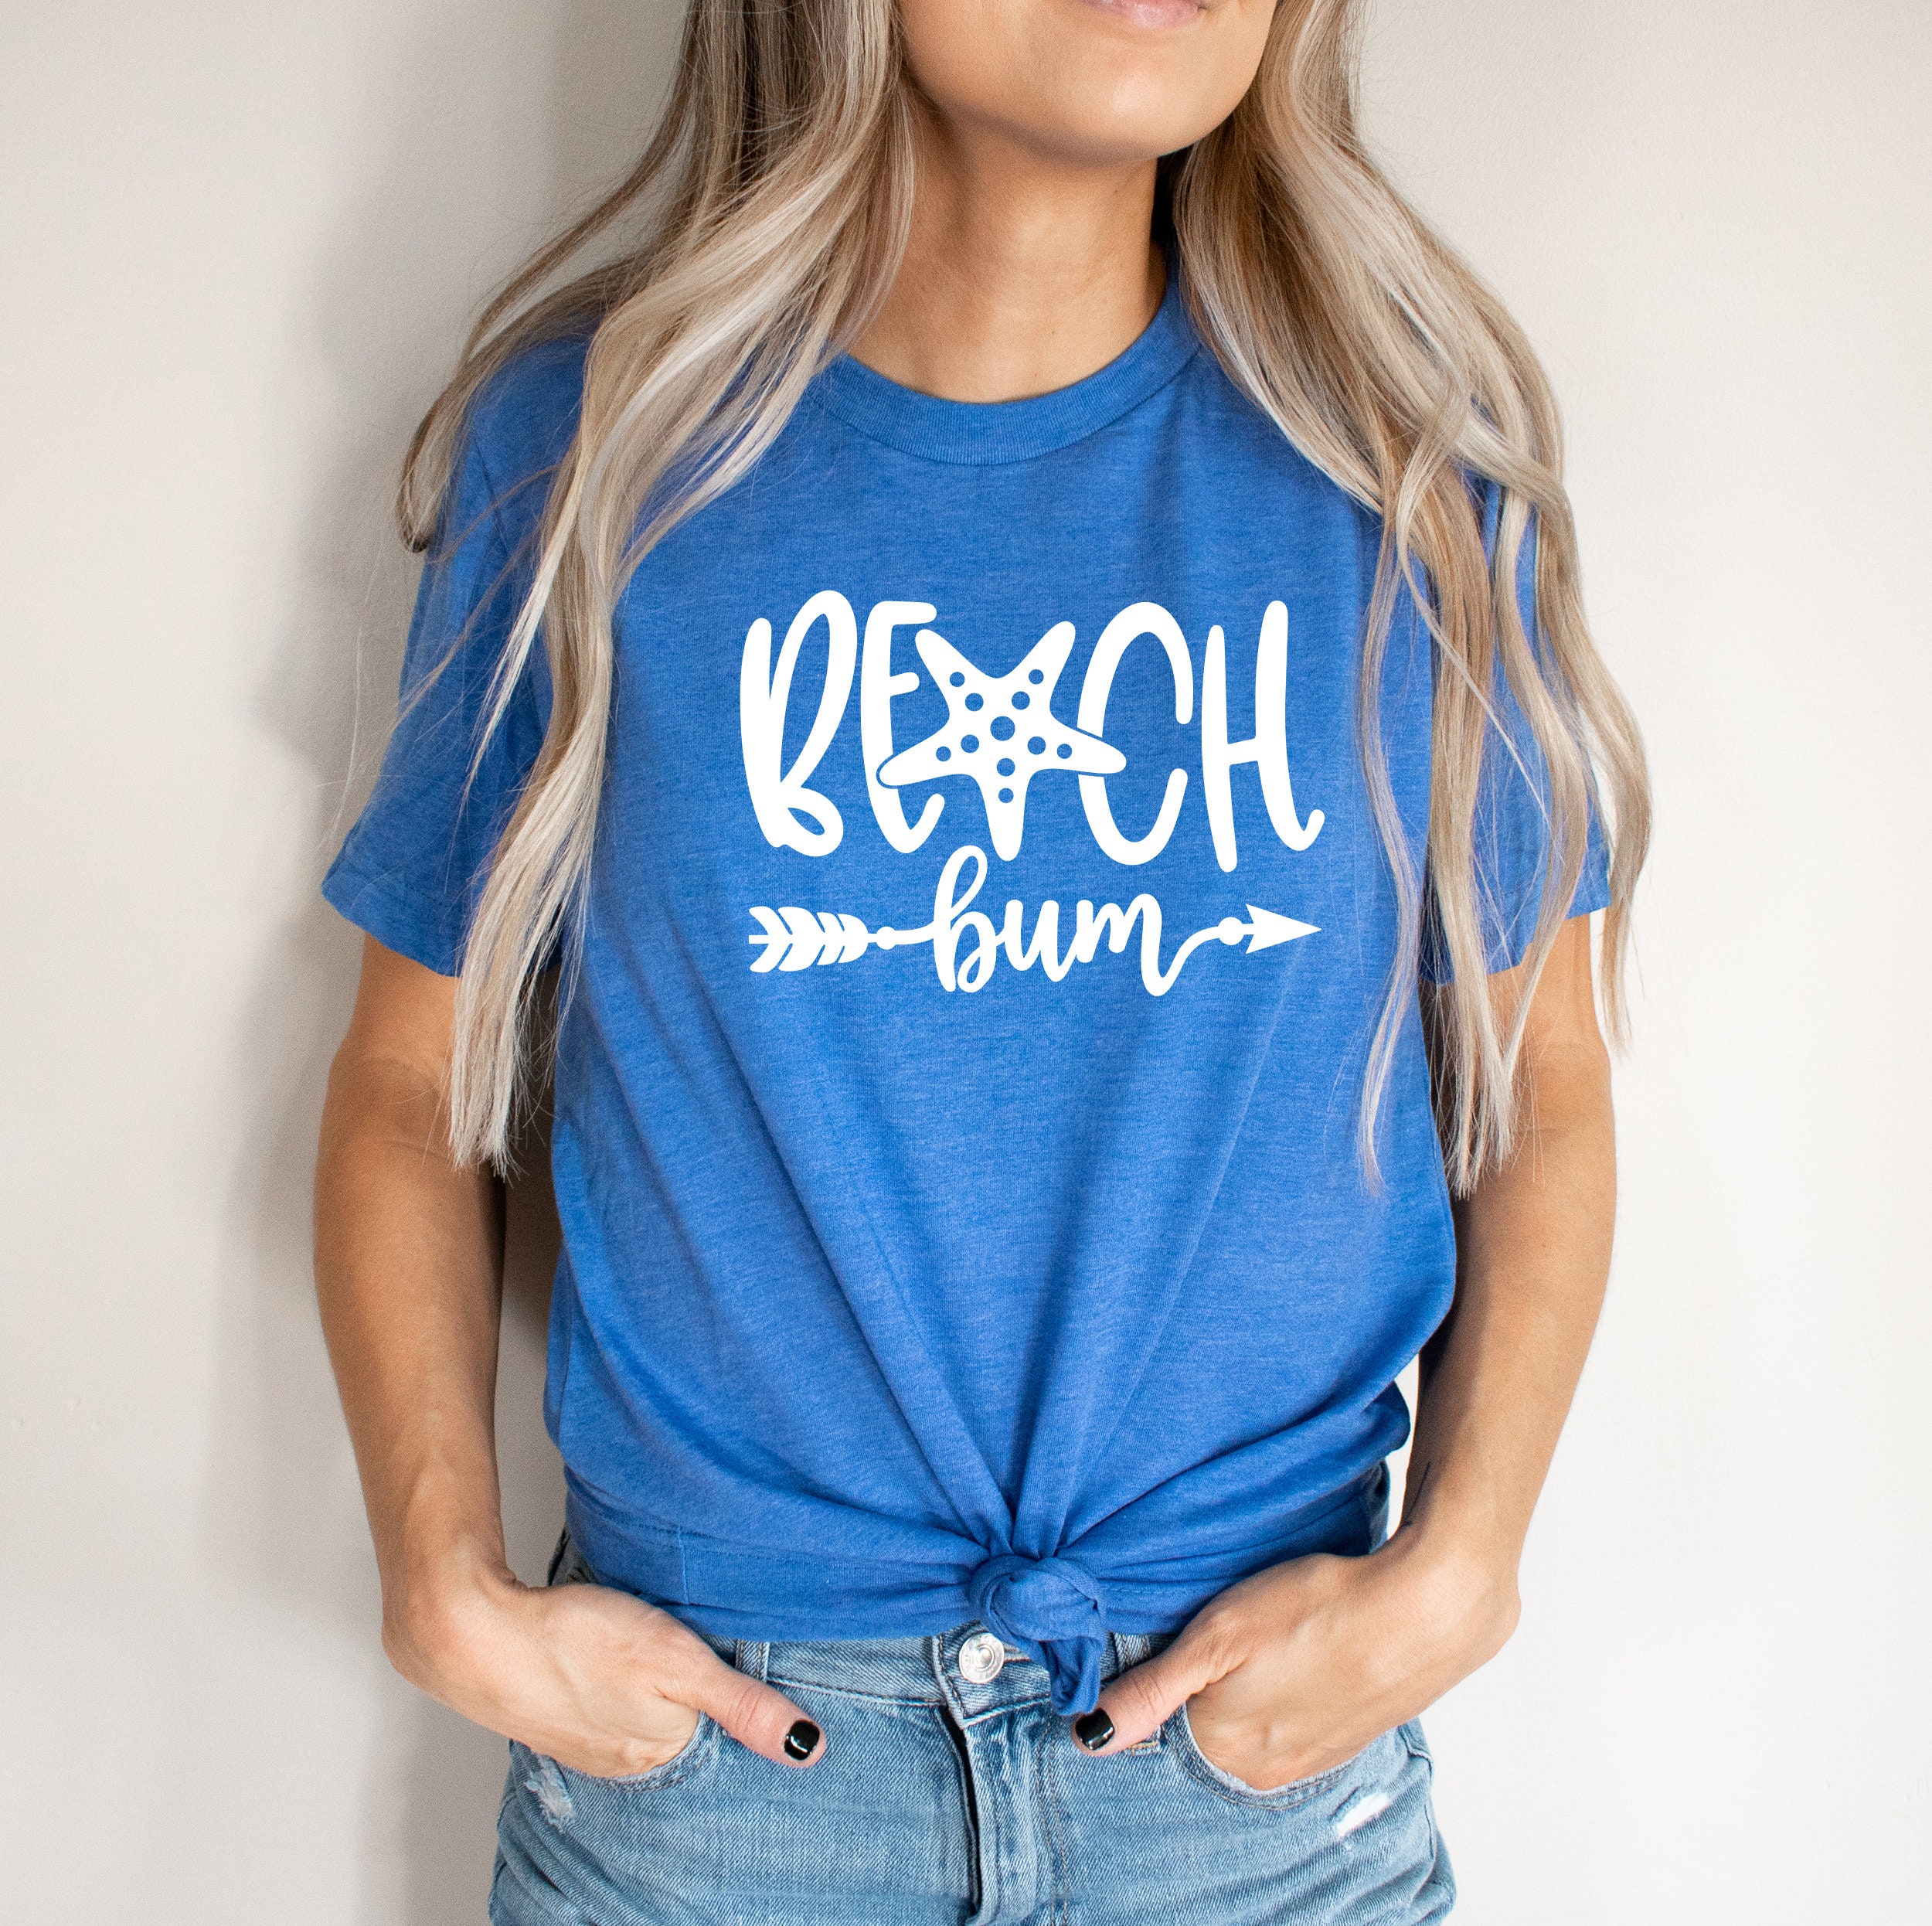 Beach Bum Beach Shirt Summer T Shirt Gift For Her Shirts | Etsy